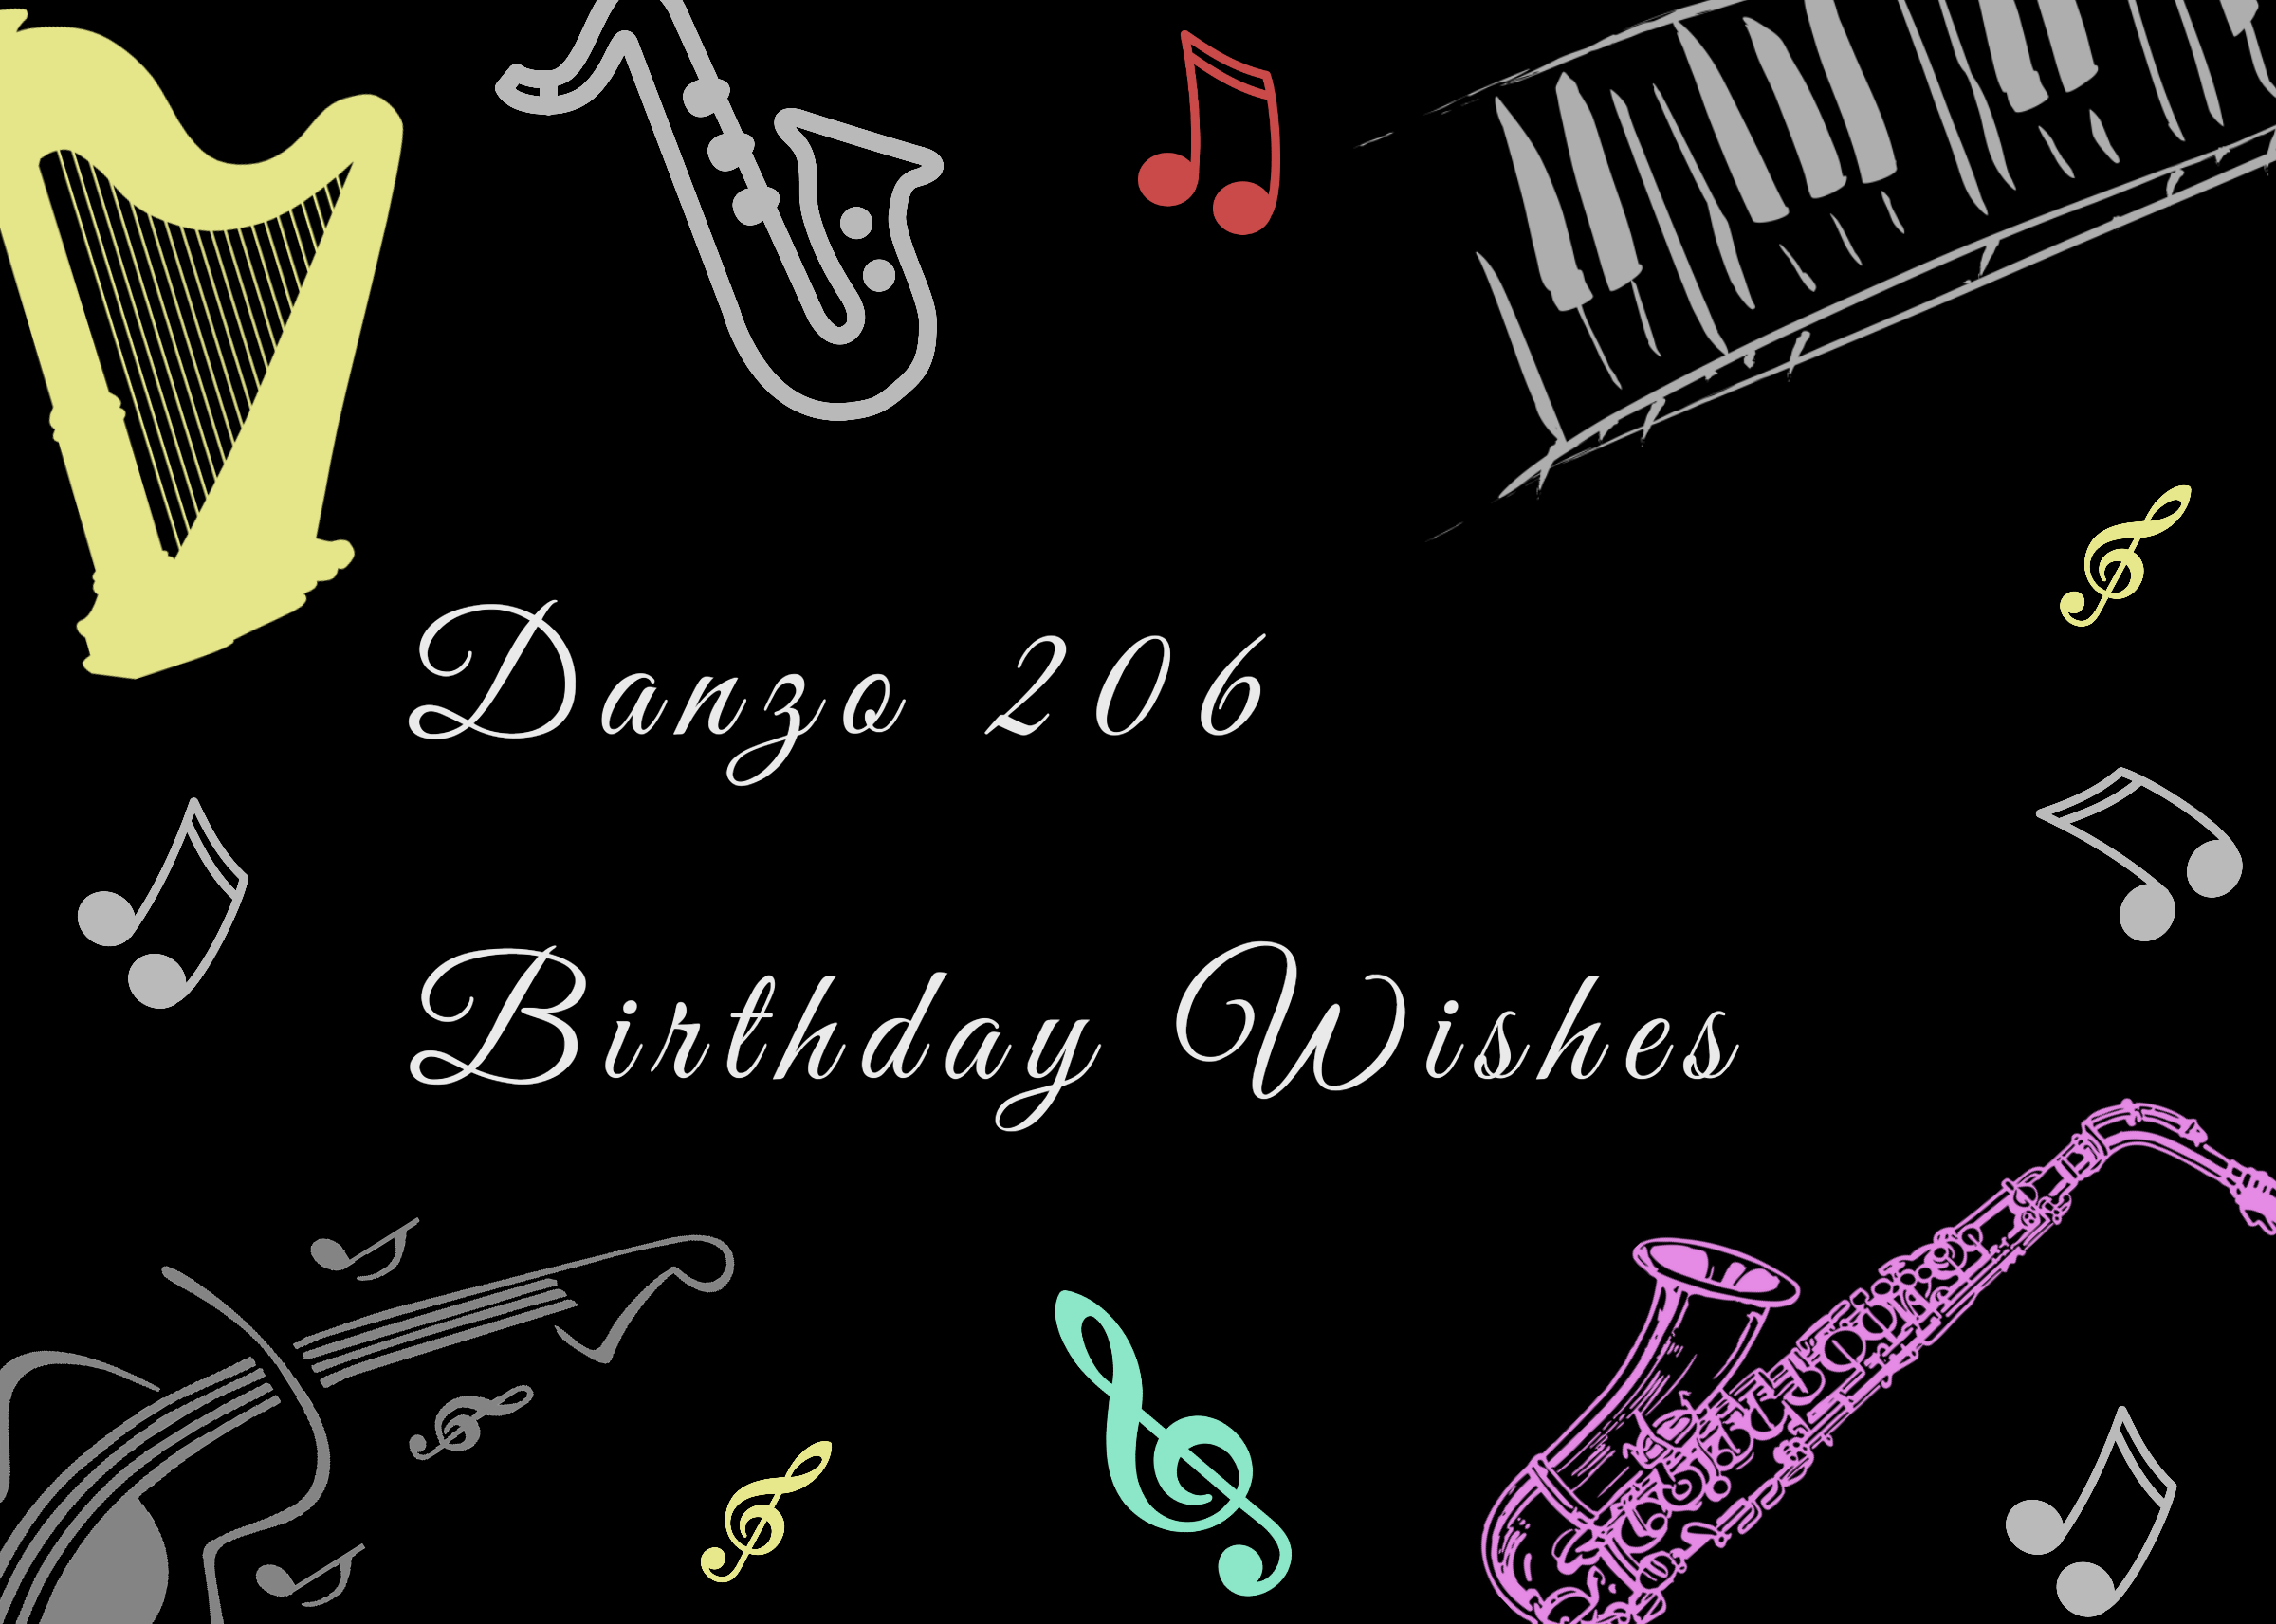 Danzo 206 Birthday Wishes